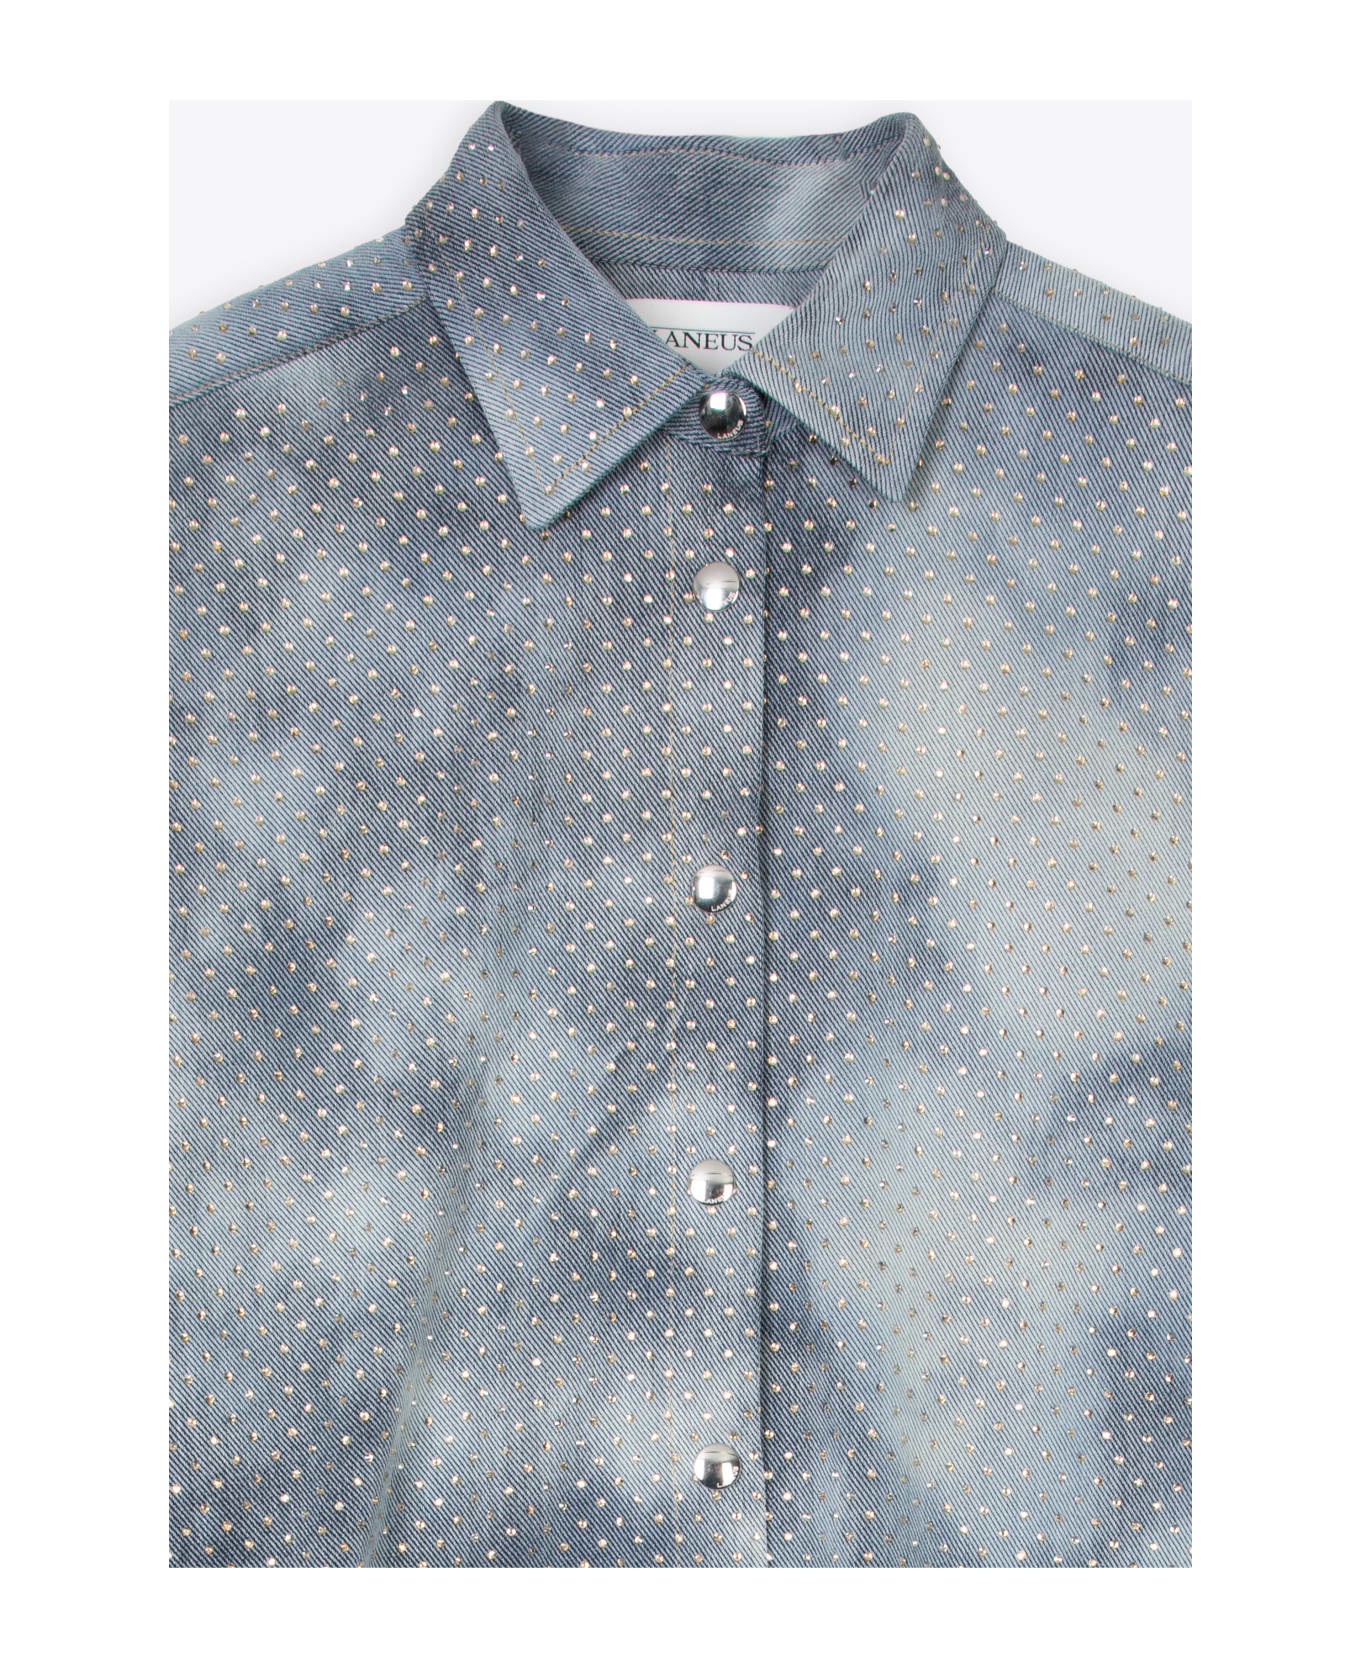 Laneus Denim Strass Shirt Woman Light blue denim shirt with crystals - Denim Strass Shirt - Denim chiaro